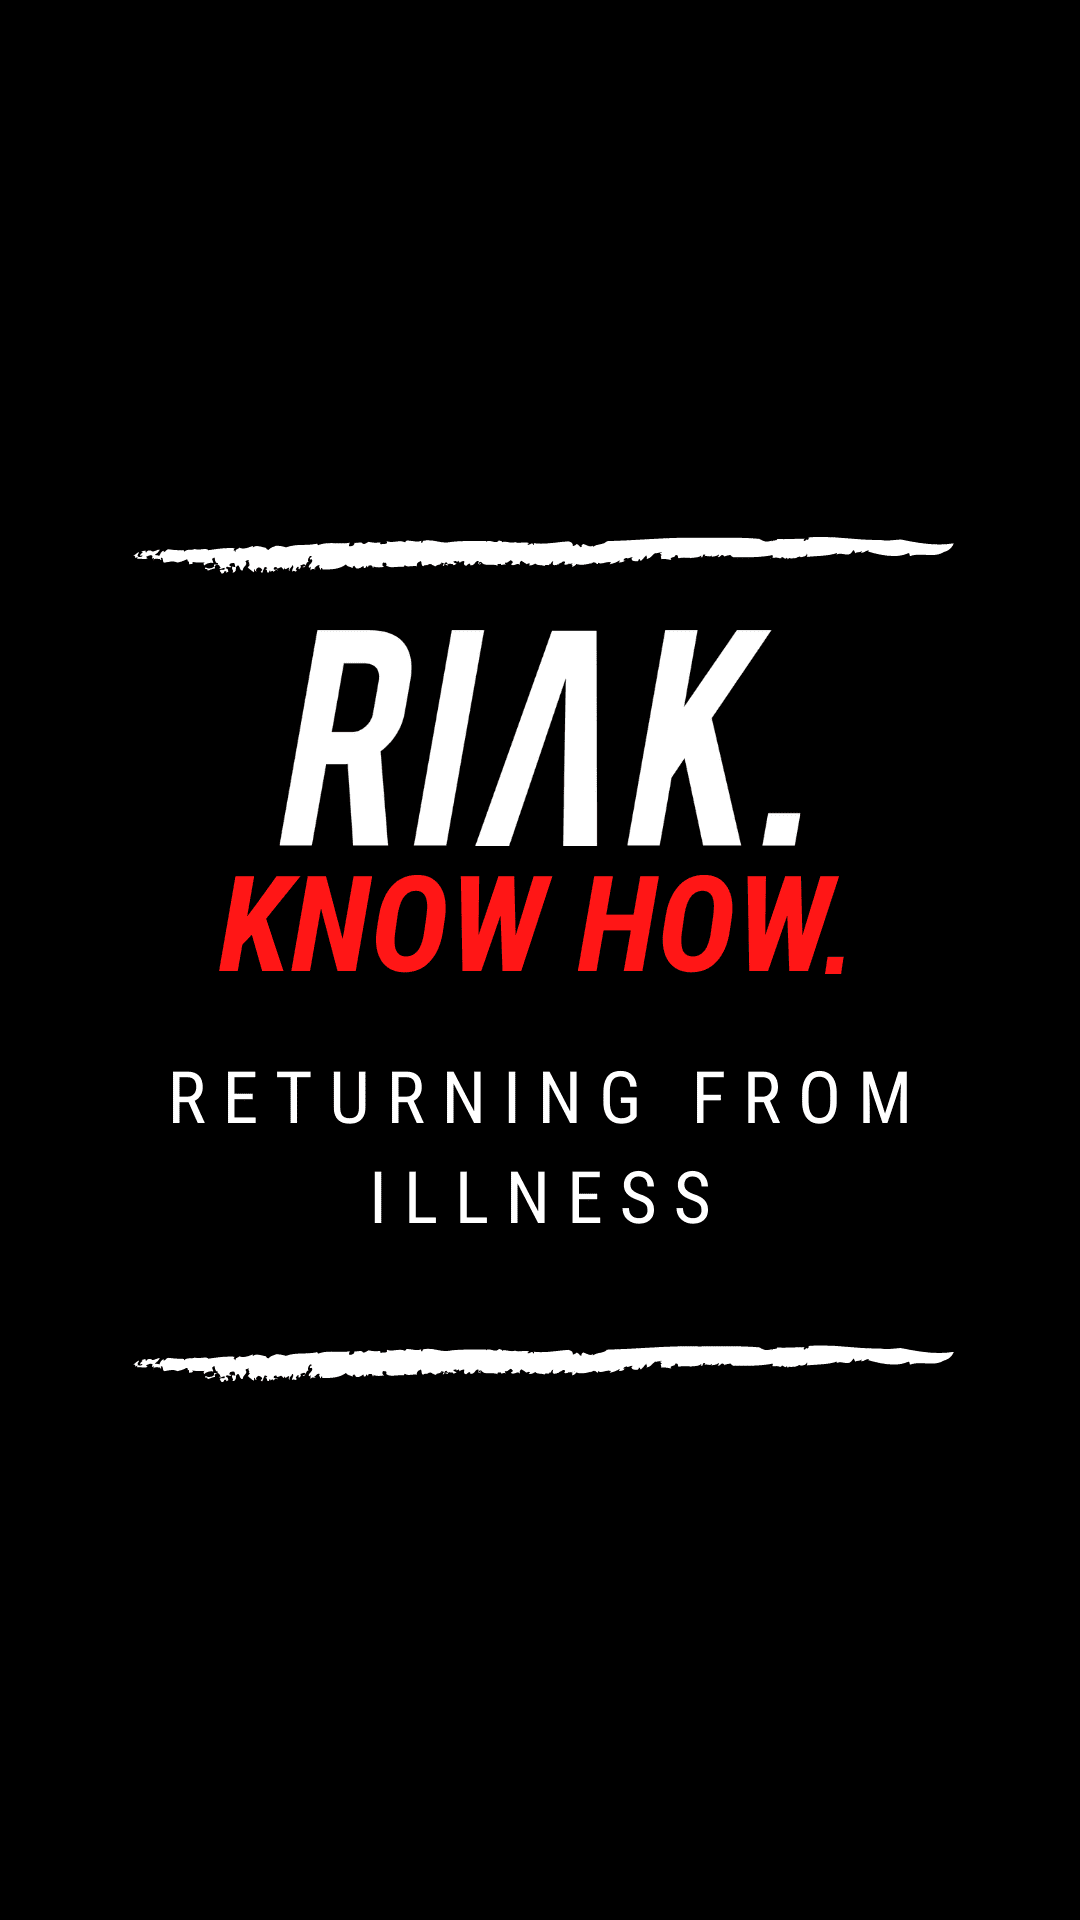 RIAK Know How – Returning from illness